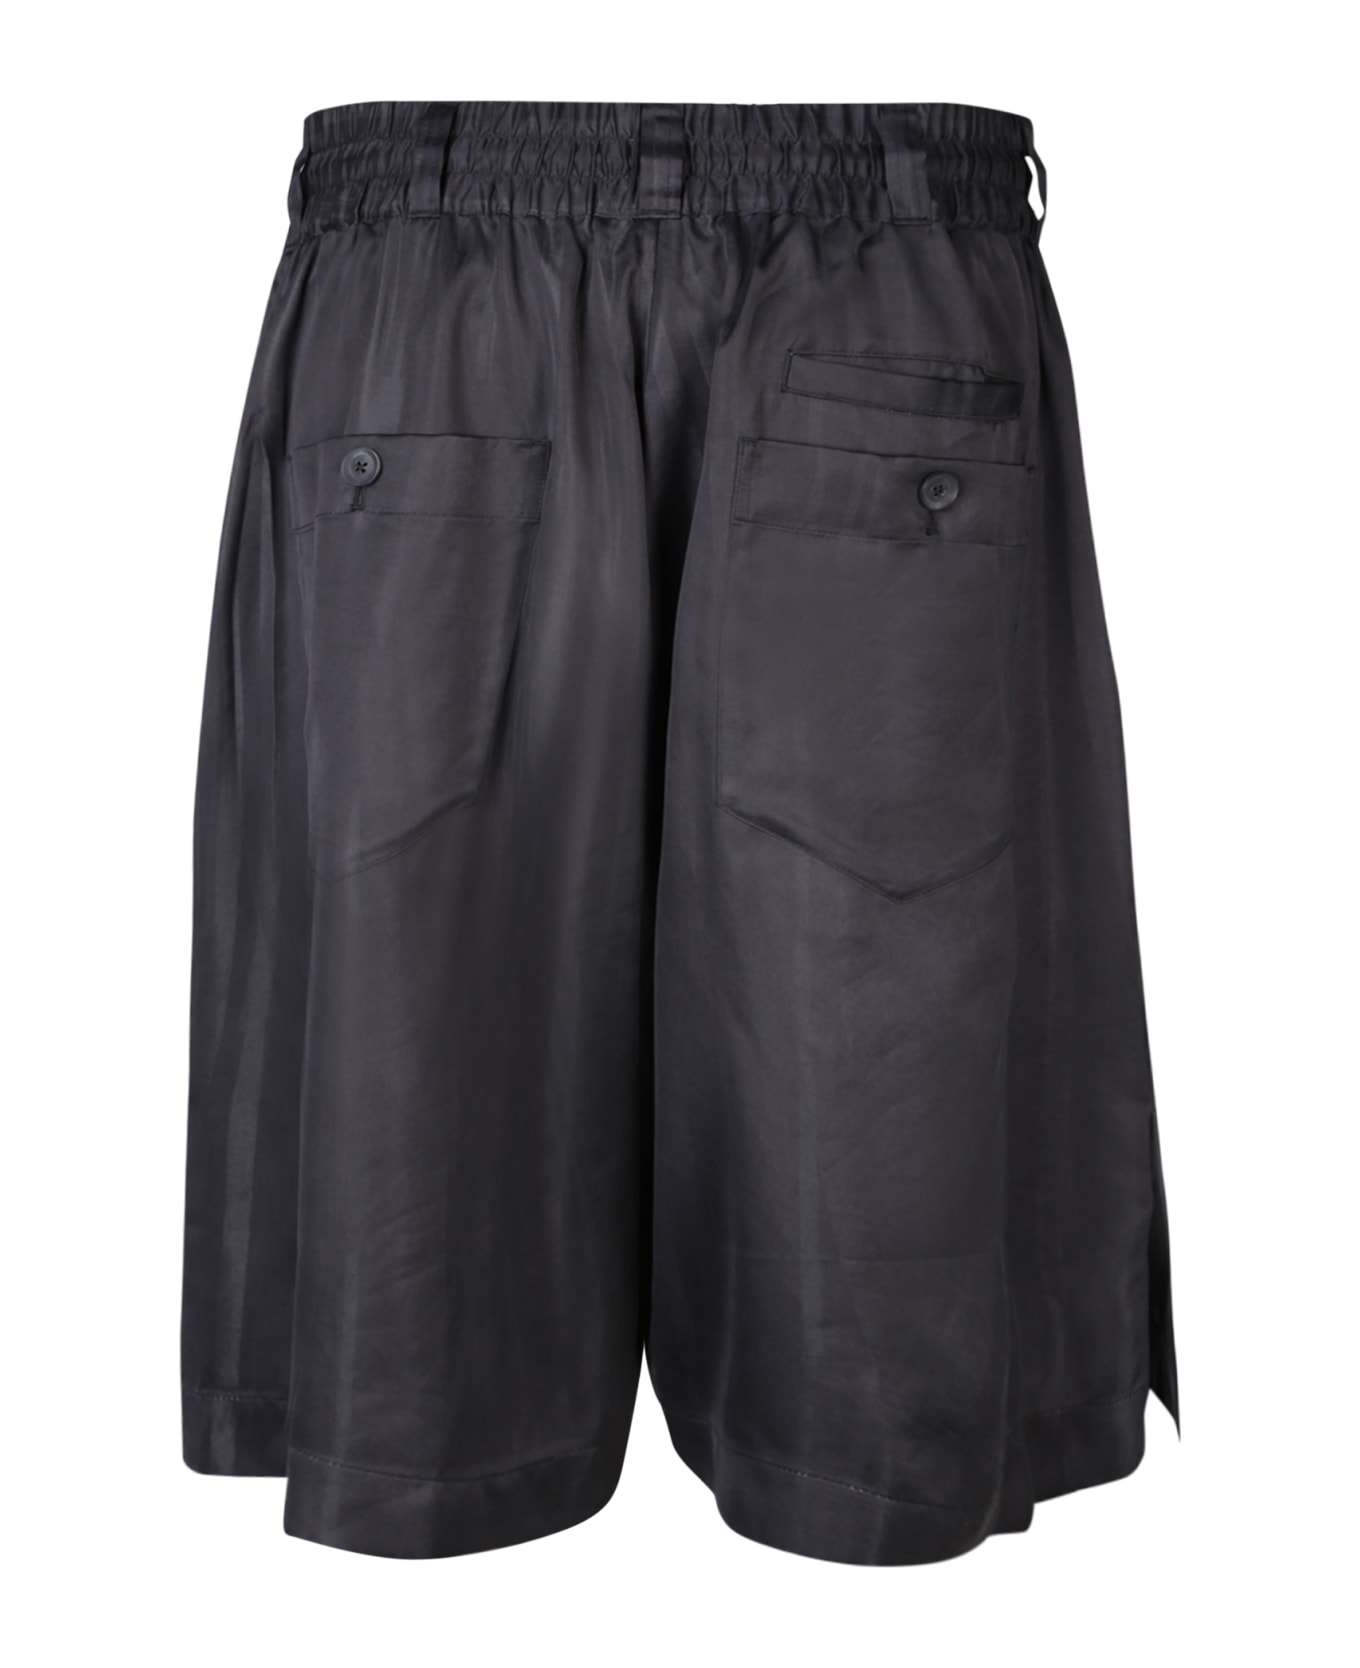 Y-3 Adidas Y-3 3s Black Bermuda Shorts - Black